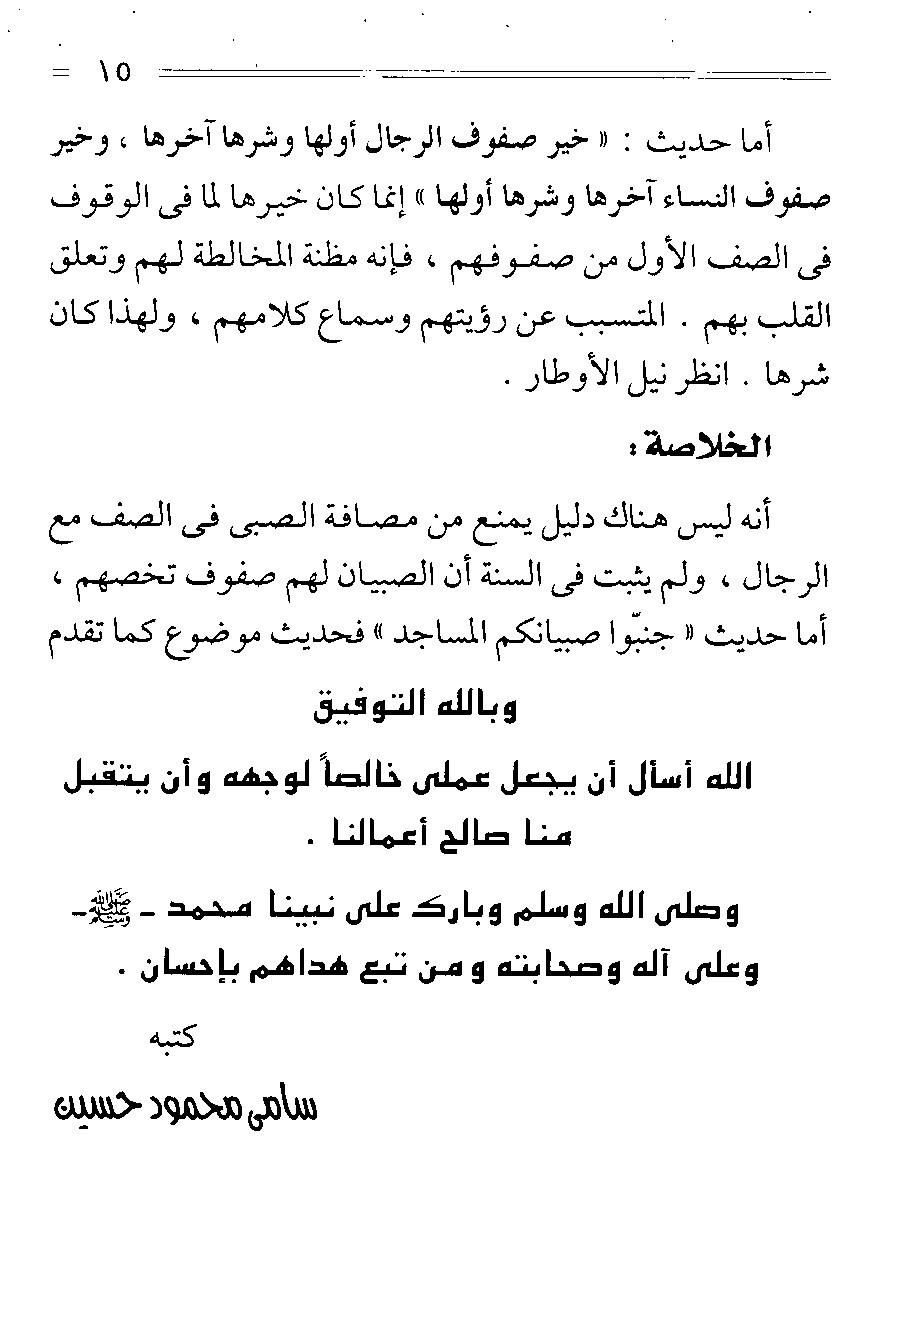 من الفقة الاسلامي كتاب أهمية المسجد (في تربية الابناء) للشيخ سامى محمو د" 978054114